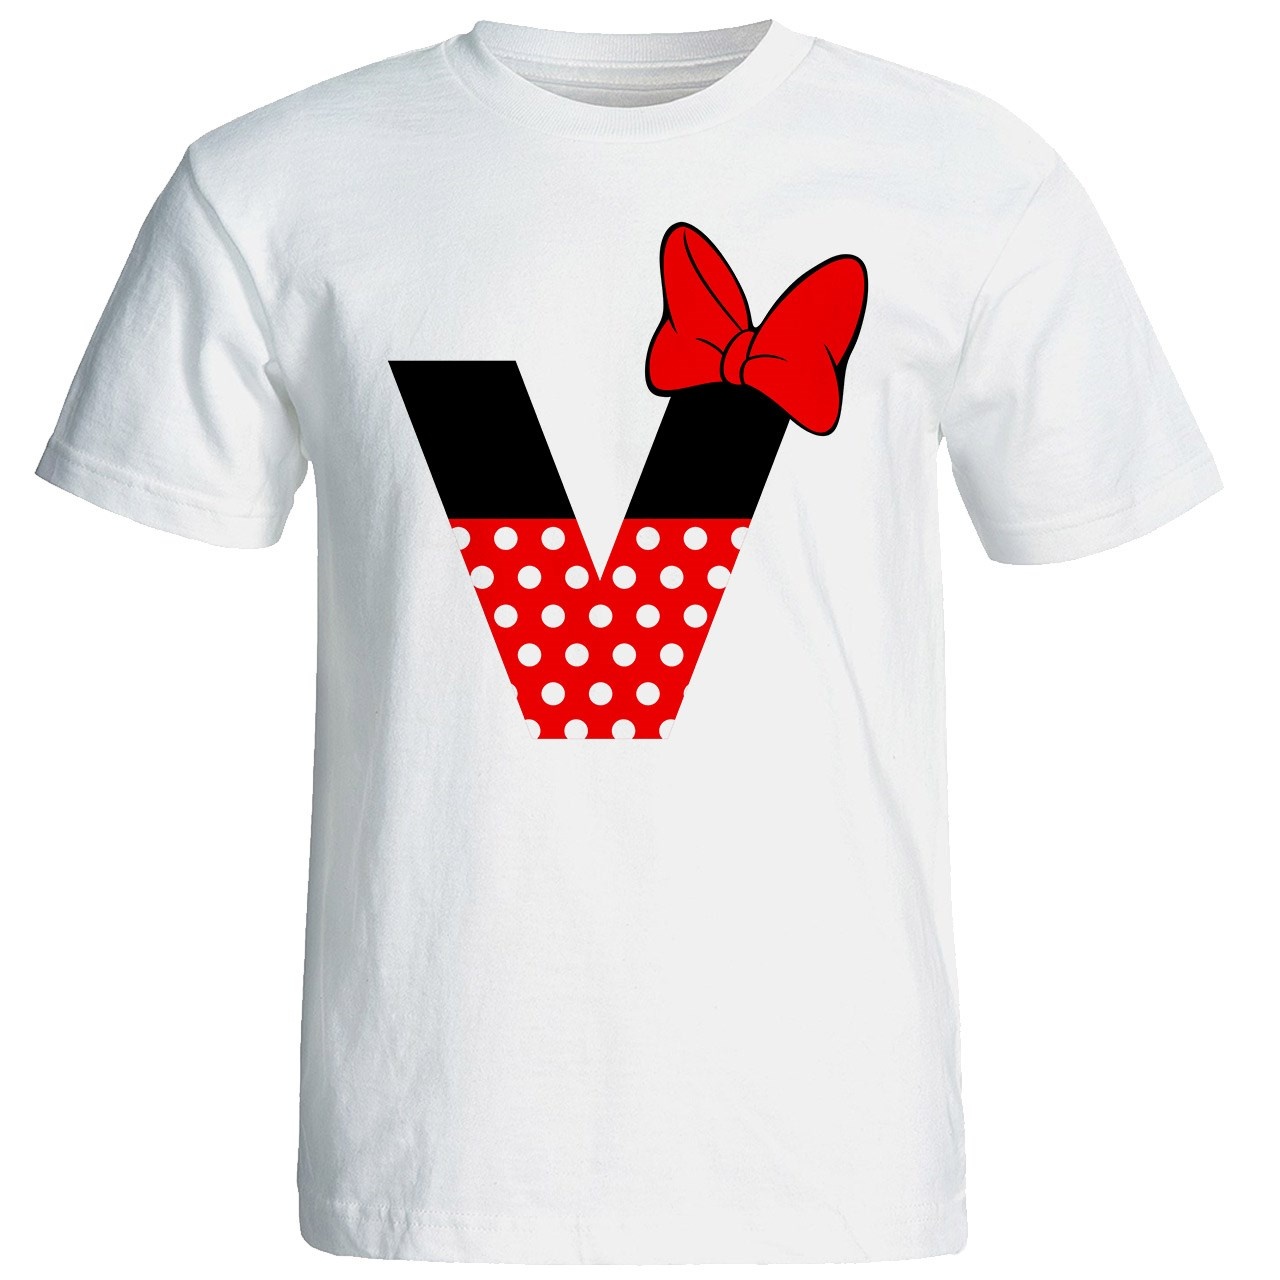 تی شرت آستین کوتاه زنانه شین دیزاین طرح میکی موس V کد 4535 -  - 1